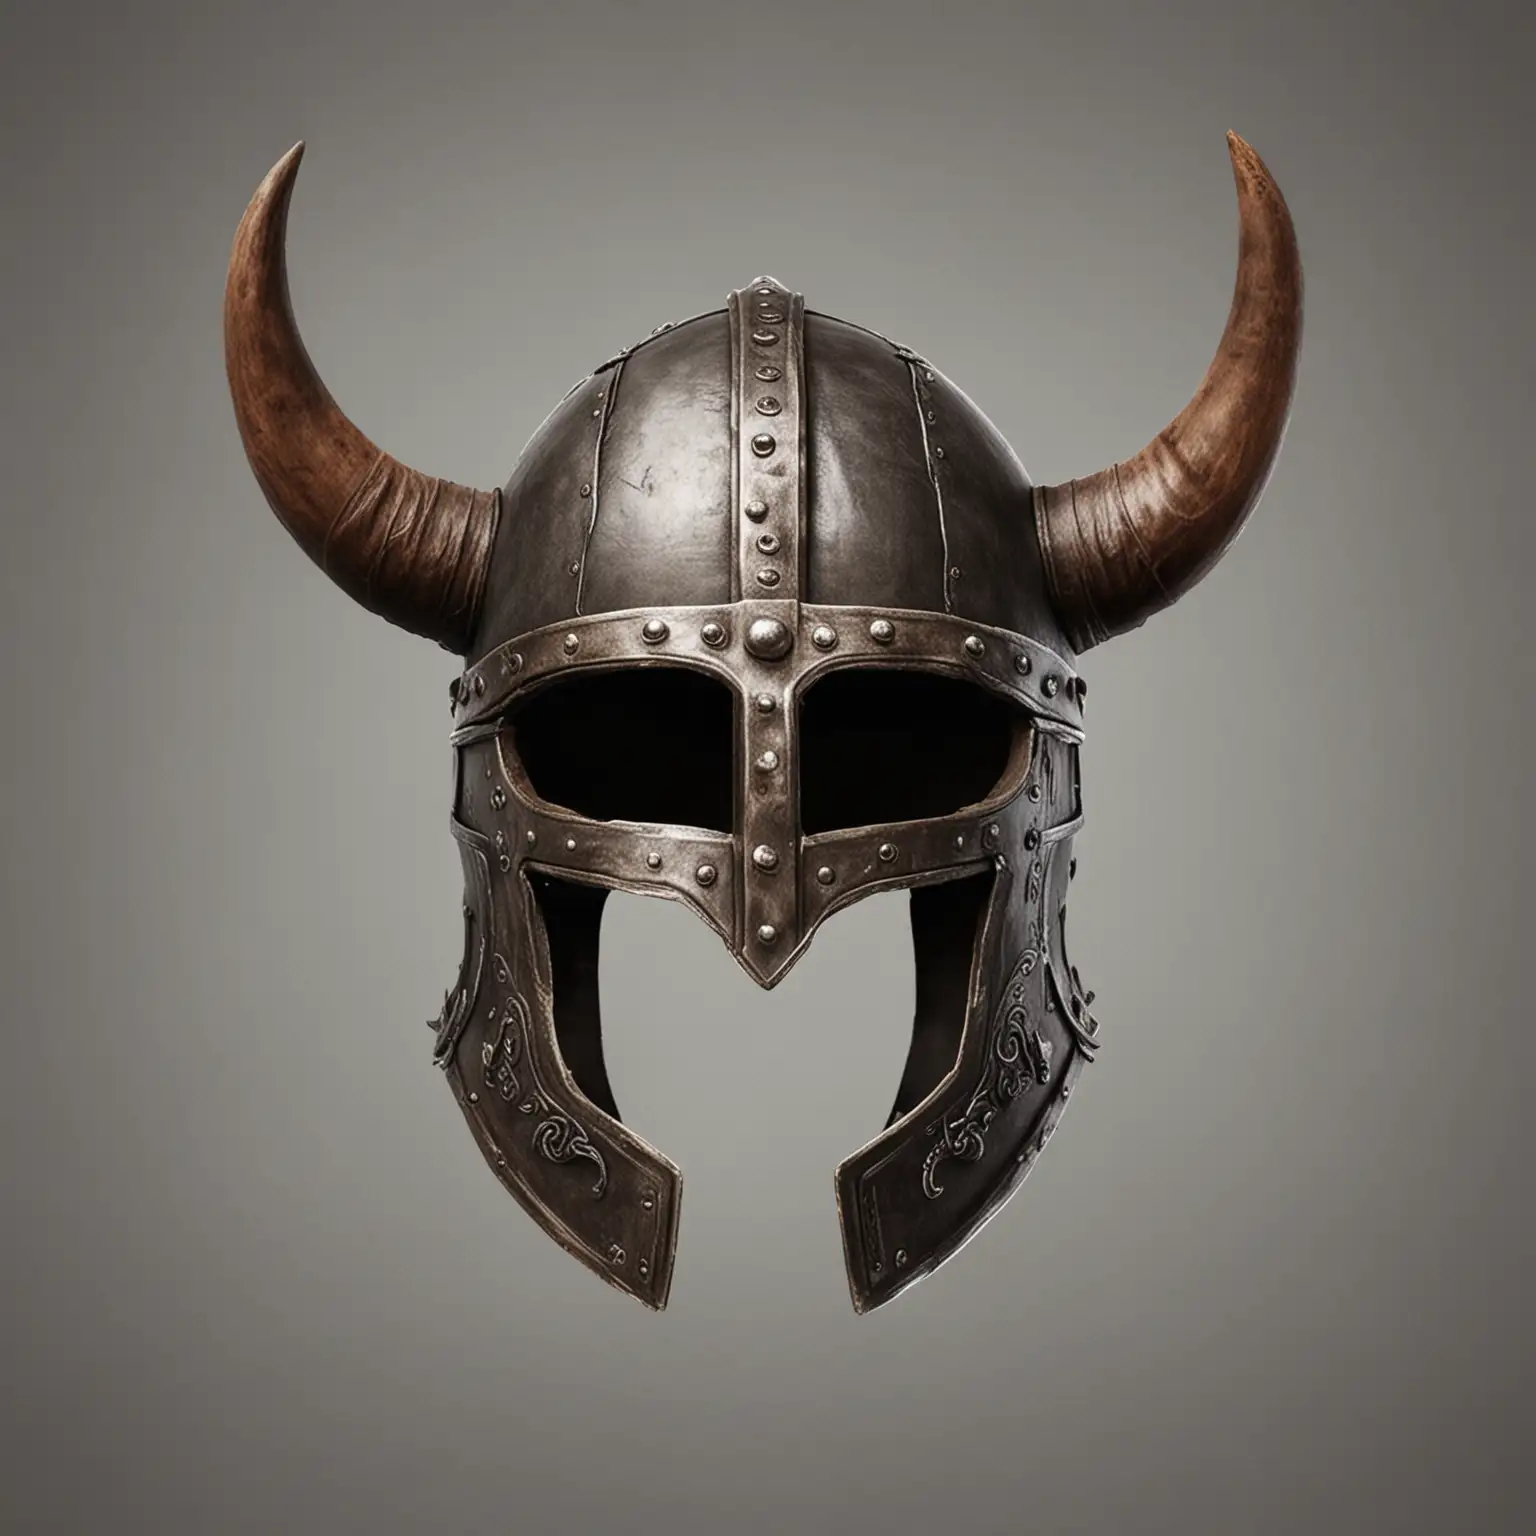 реалистичный  маленький шлем викинга, только шлем с рогами, пустой, без лица или головы